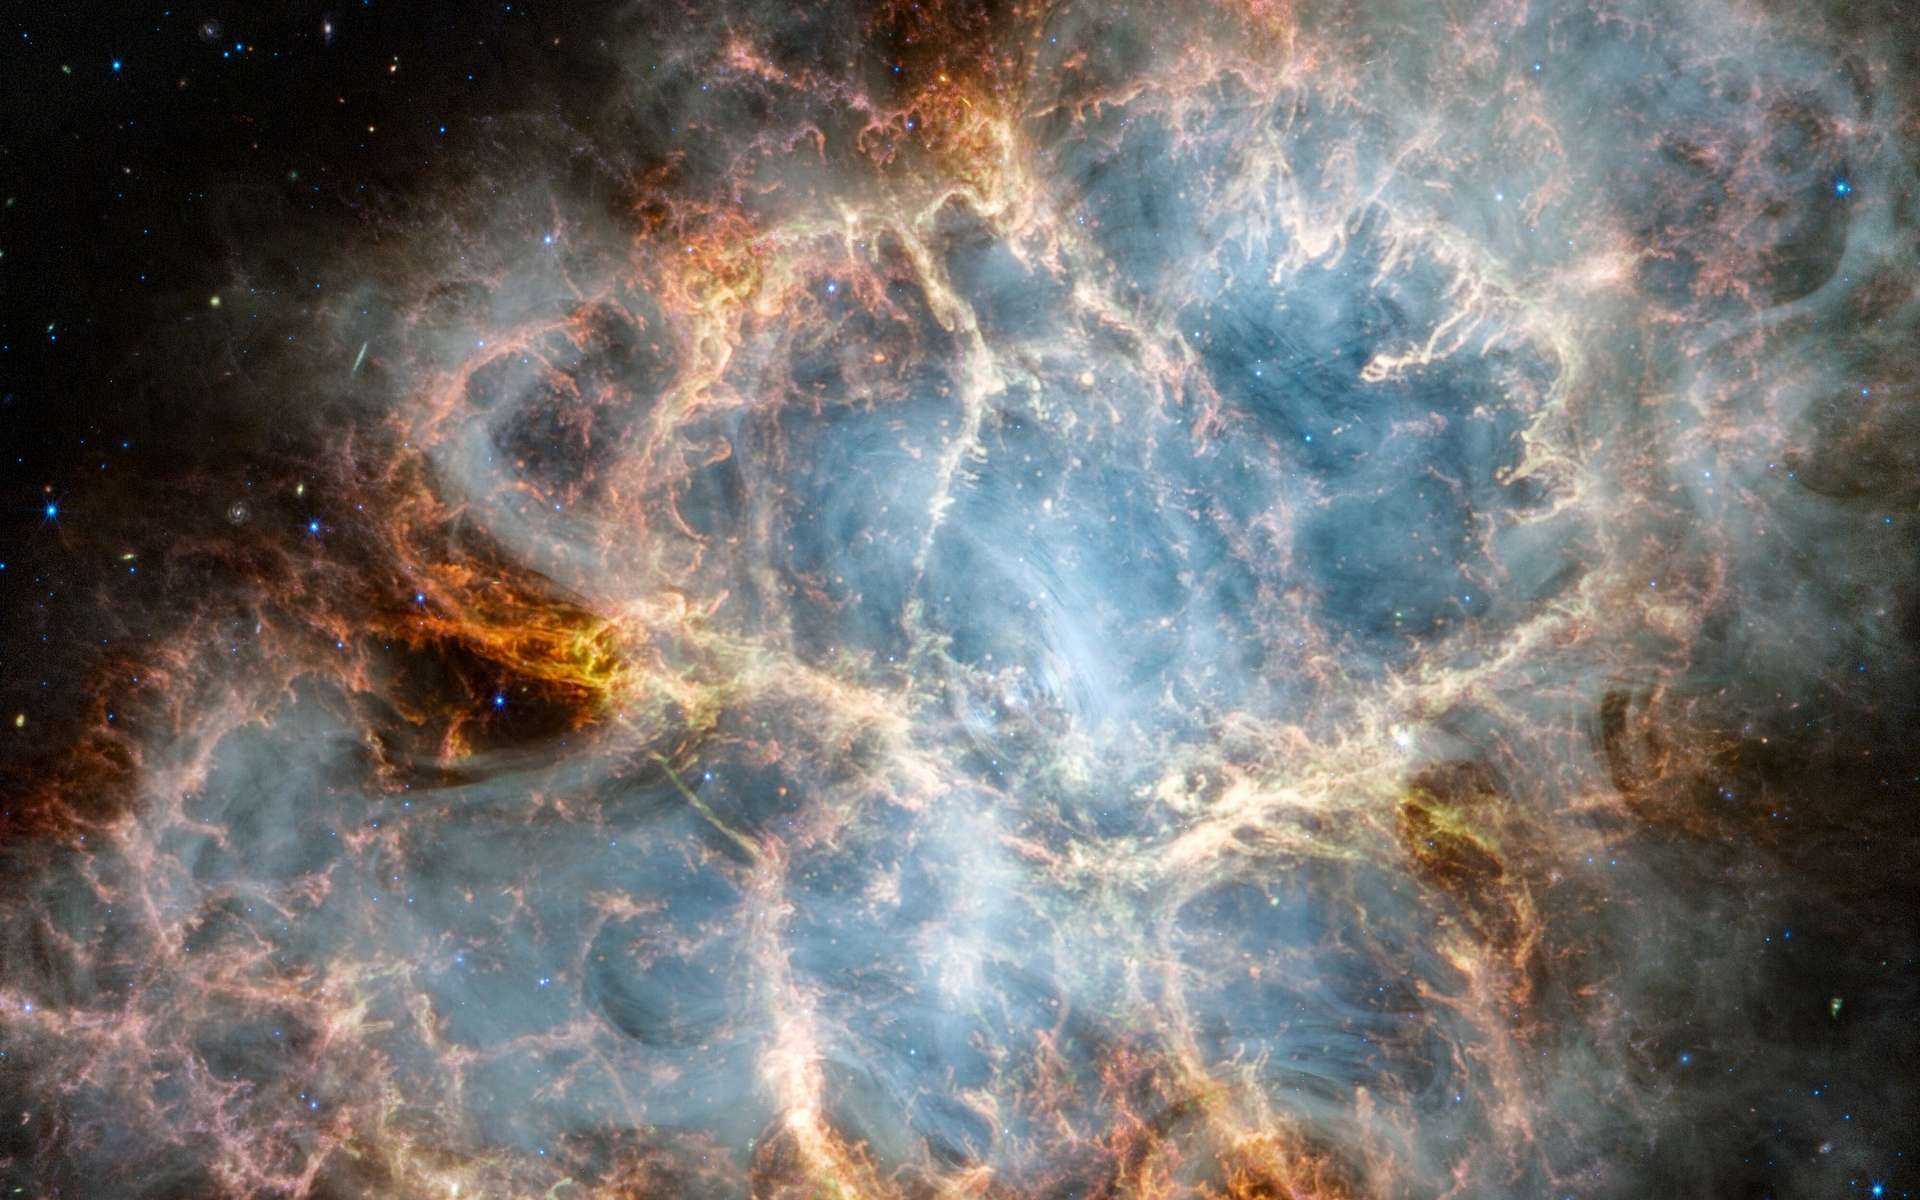 Le télescope James-Webb nous dévoile la mythique nébuleuse du Crabe sous un nouveau jour !